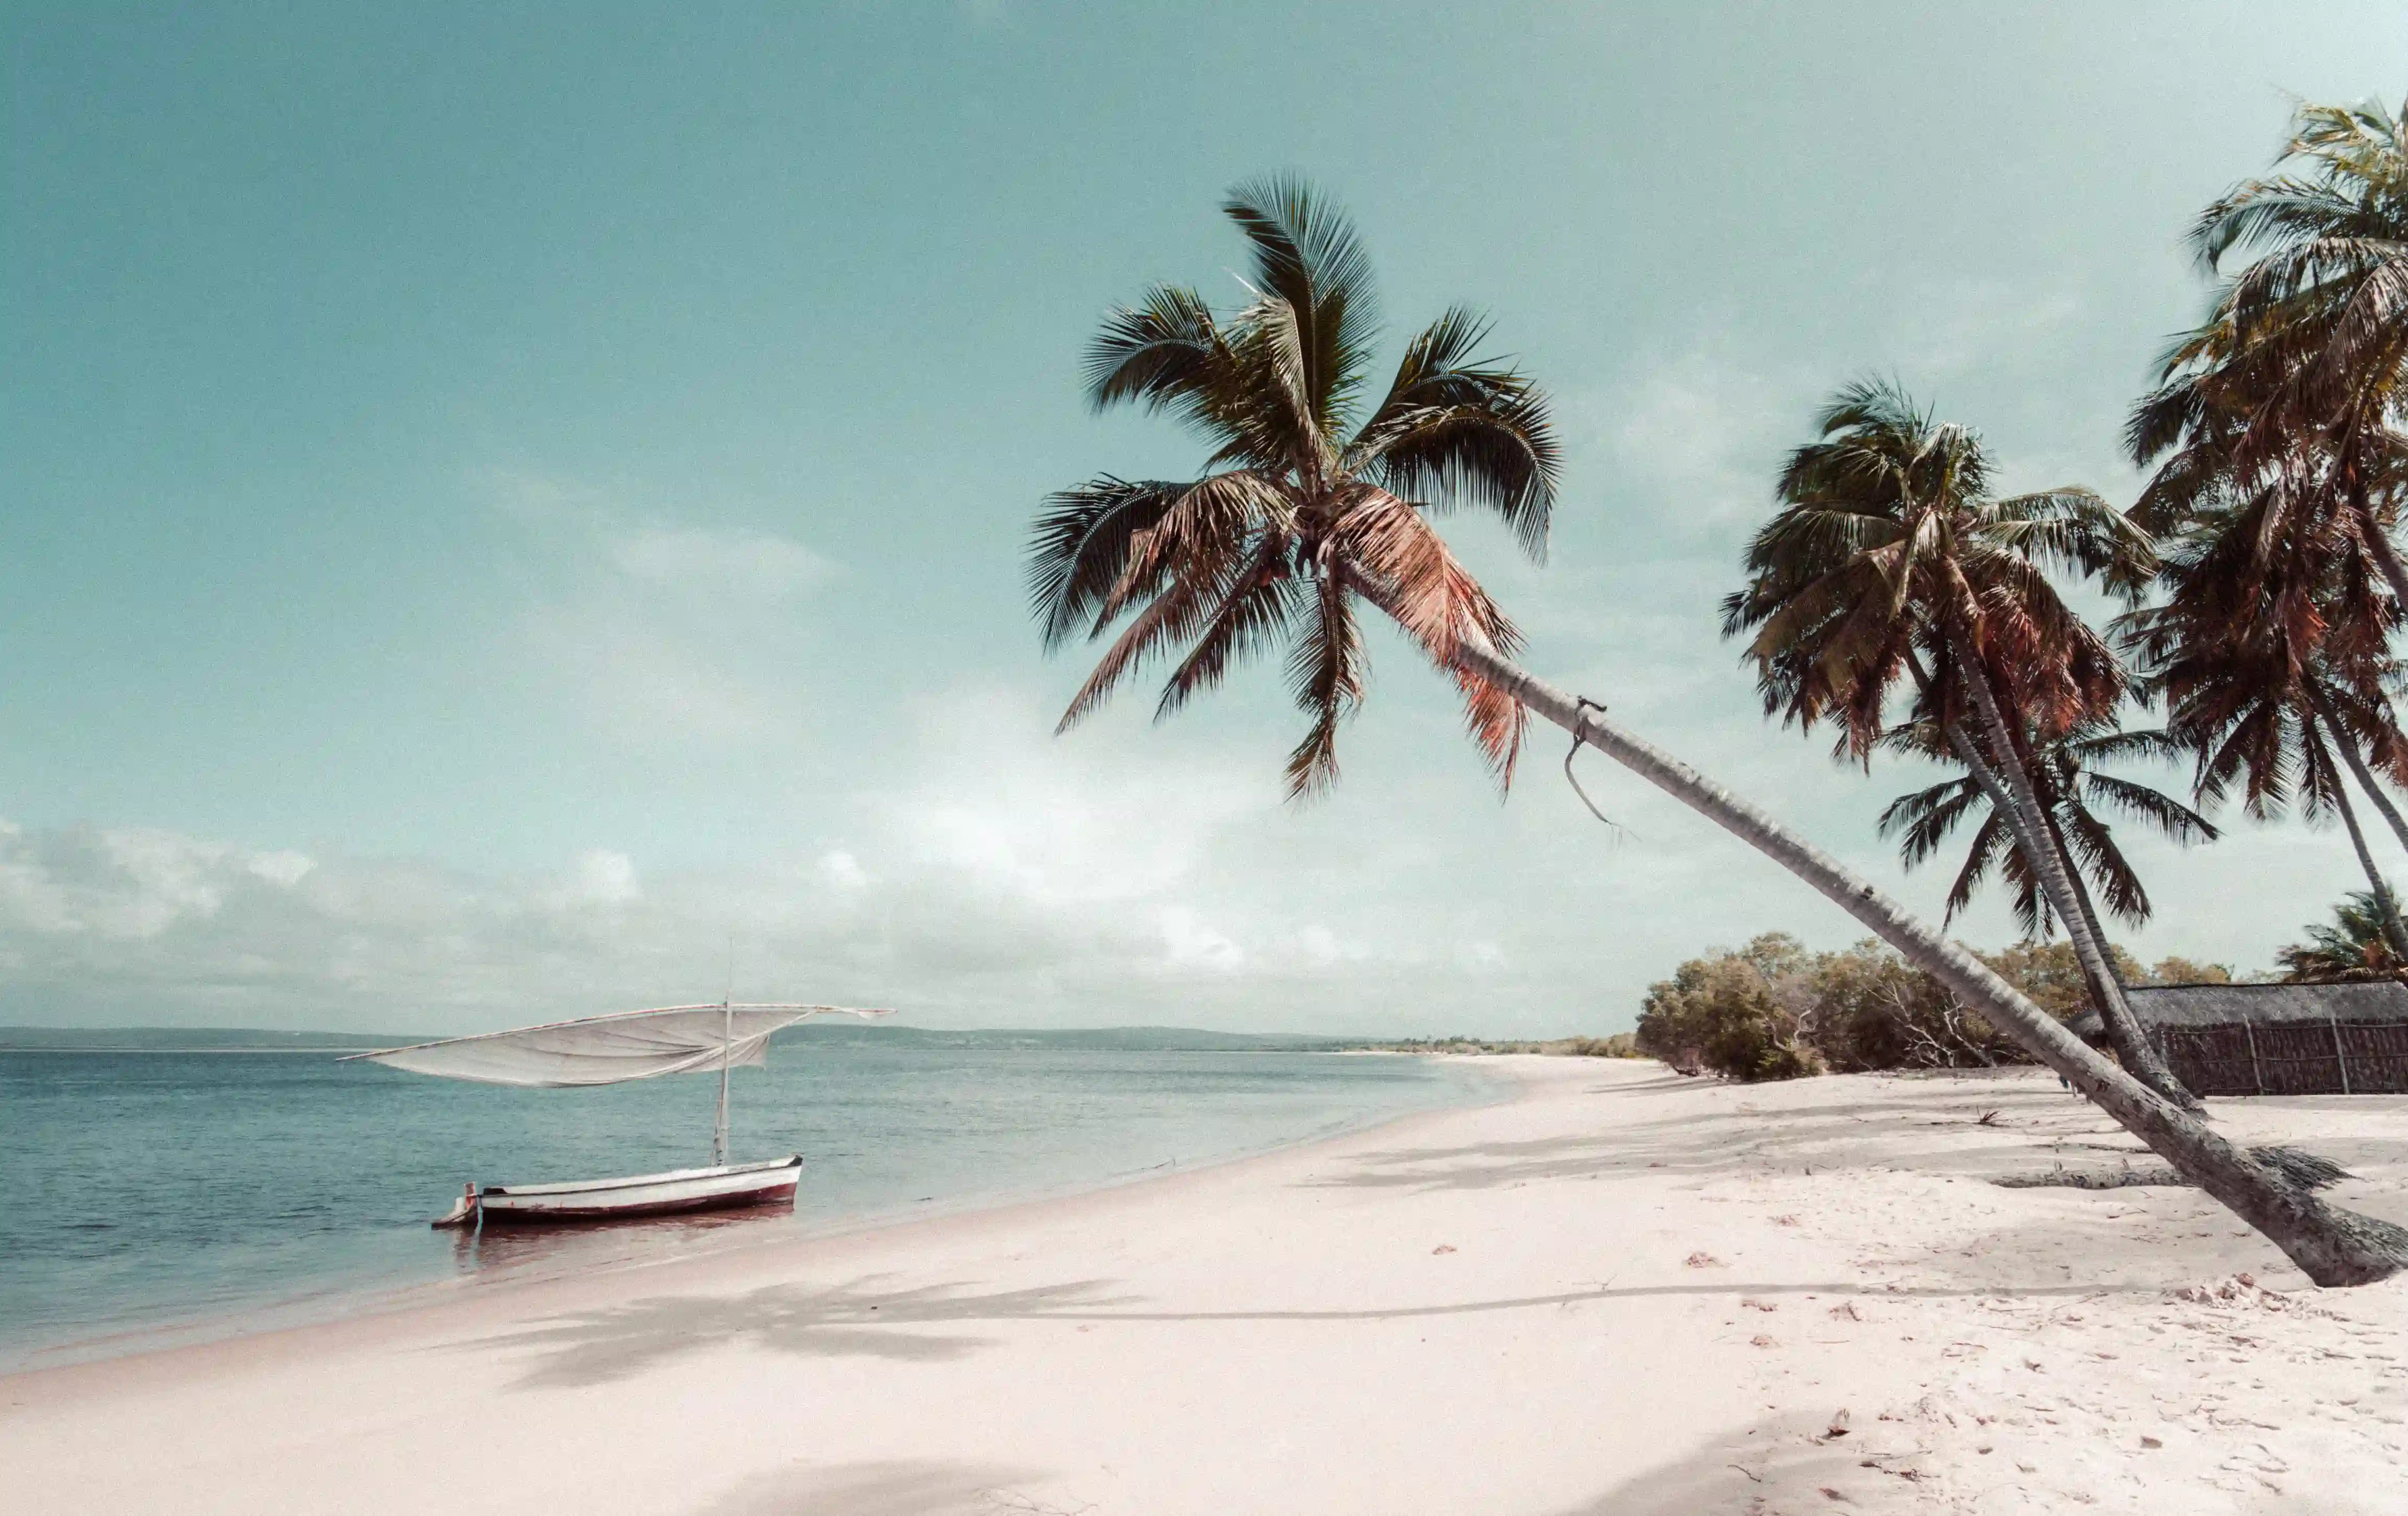 Strand, båd og palmer